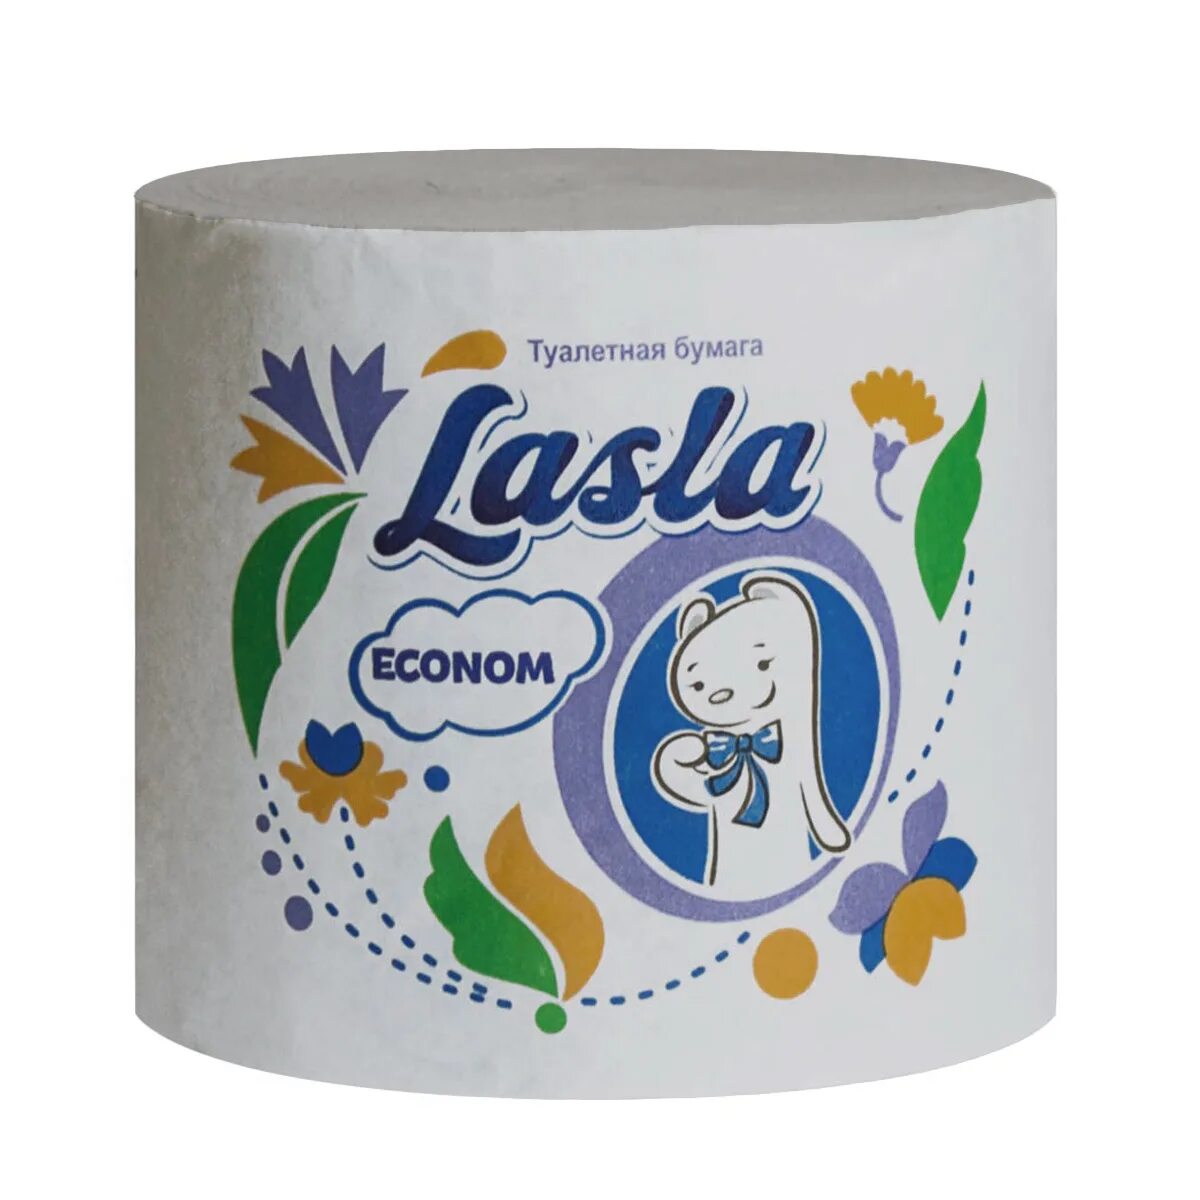 Туалетная бумага Lasla. Туалетная бумага Lasla Econom без втулки м-45. Туалетная бумага Lasla Econom м-45 33 м. Туалетная бумага Ласла эконом. Туалетная бумага оптом от производителя